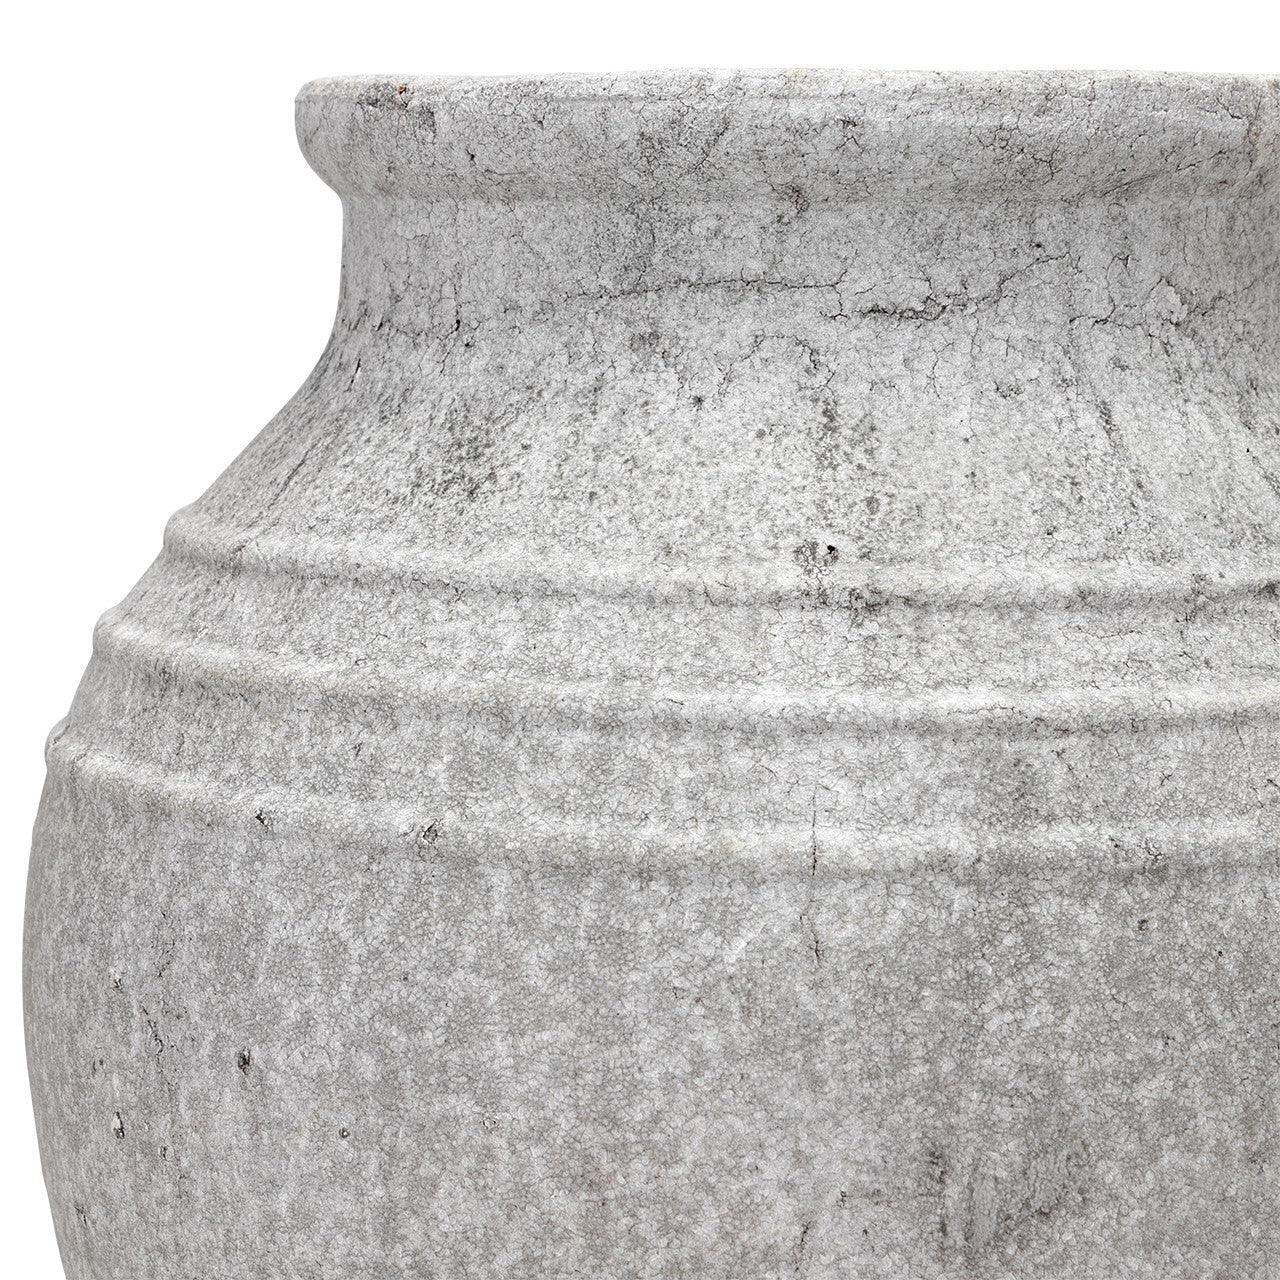 Grayson Vase